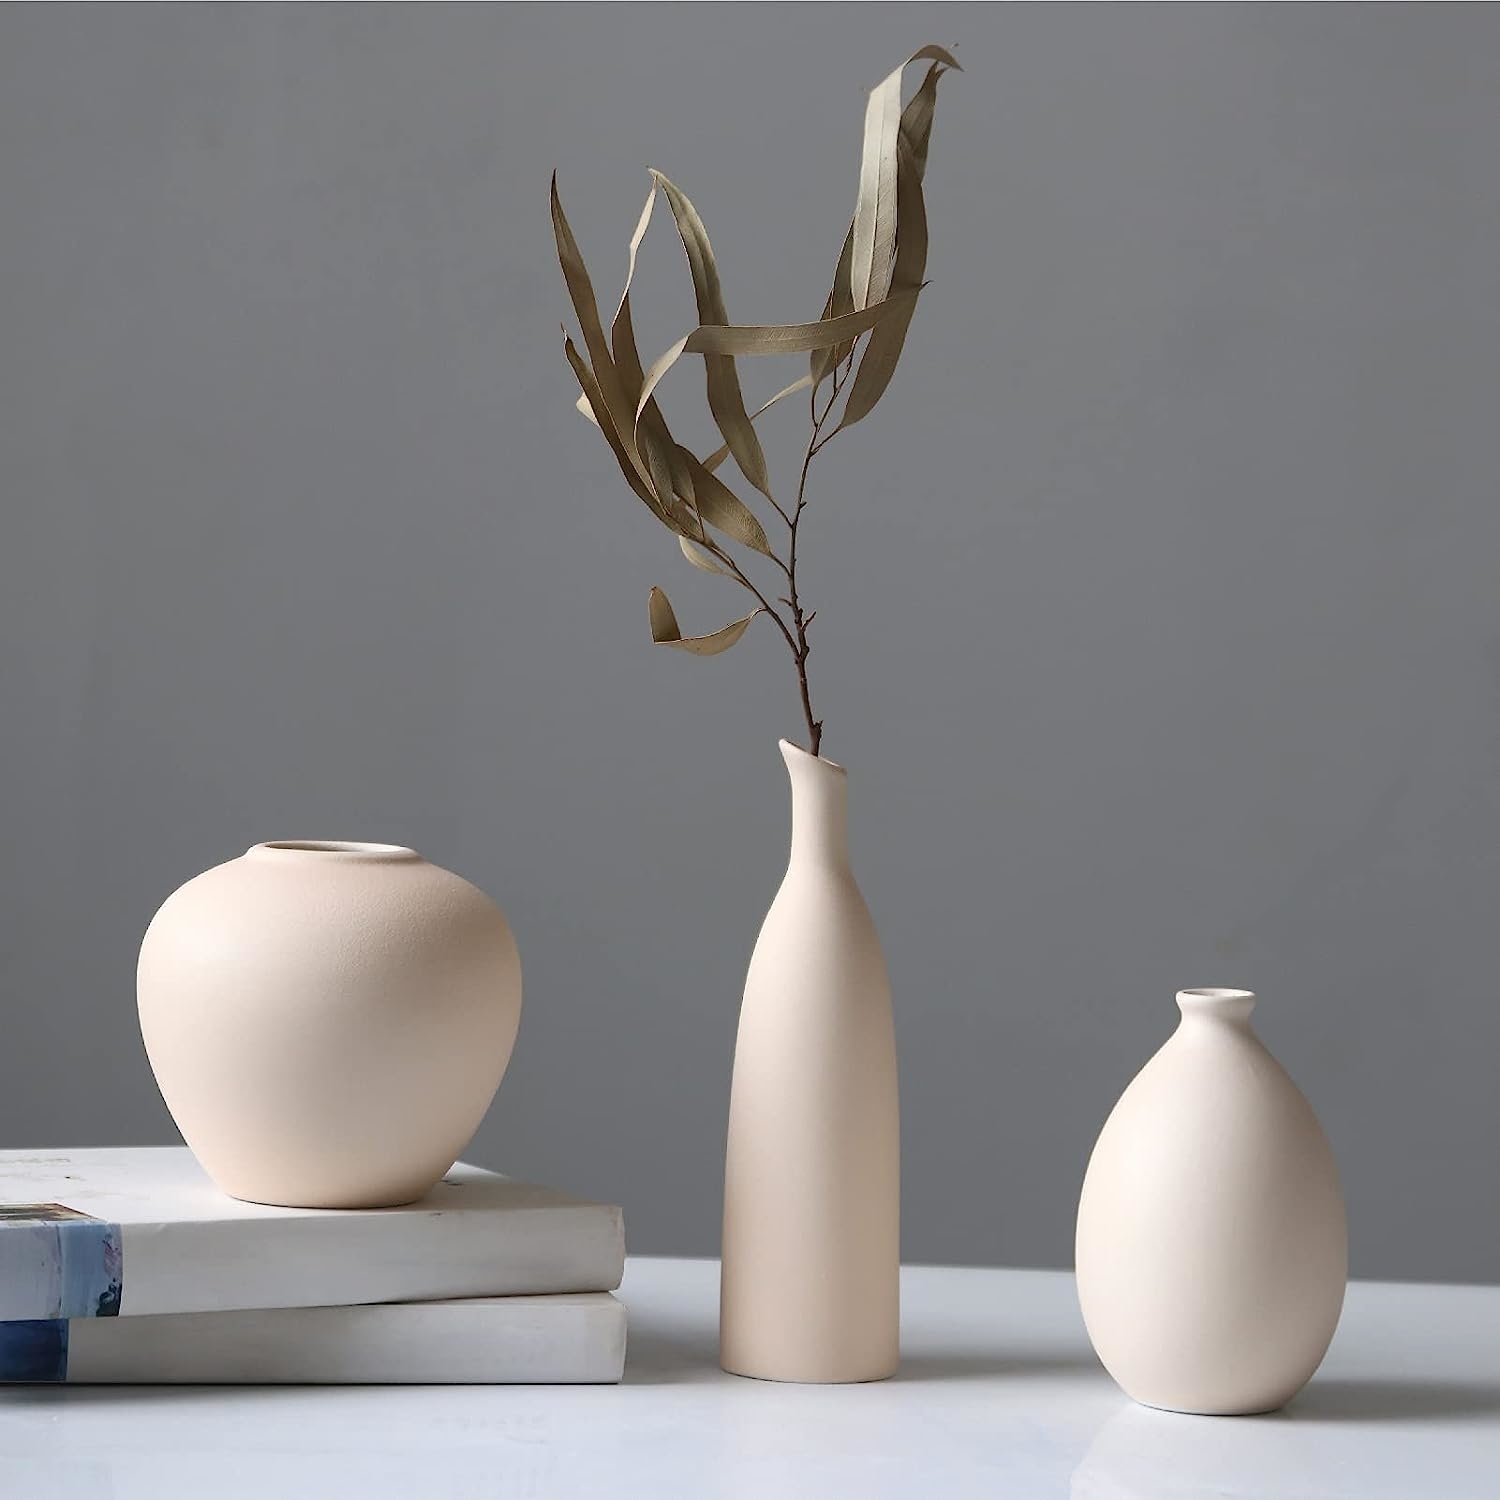 A Ceramic Vase Set